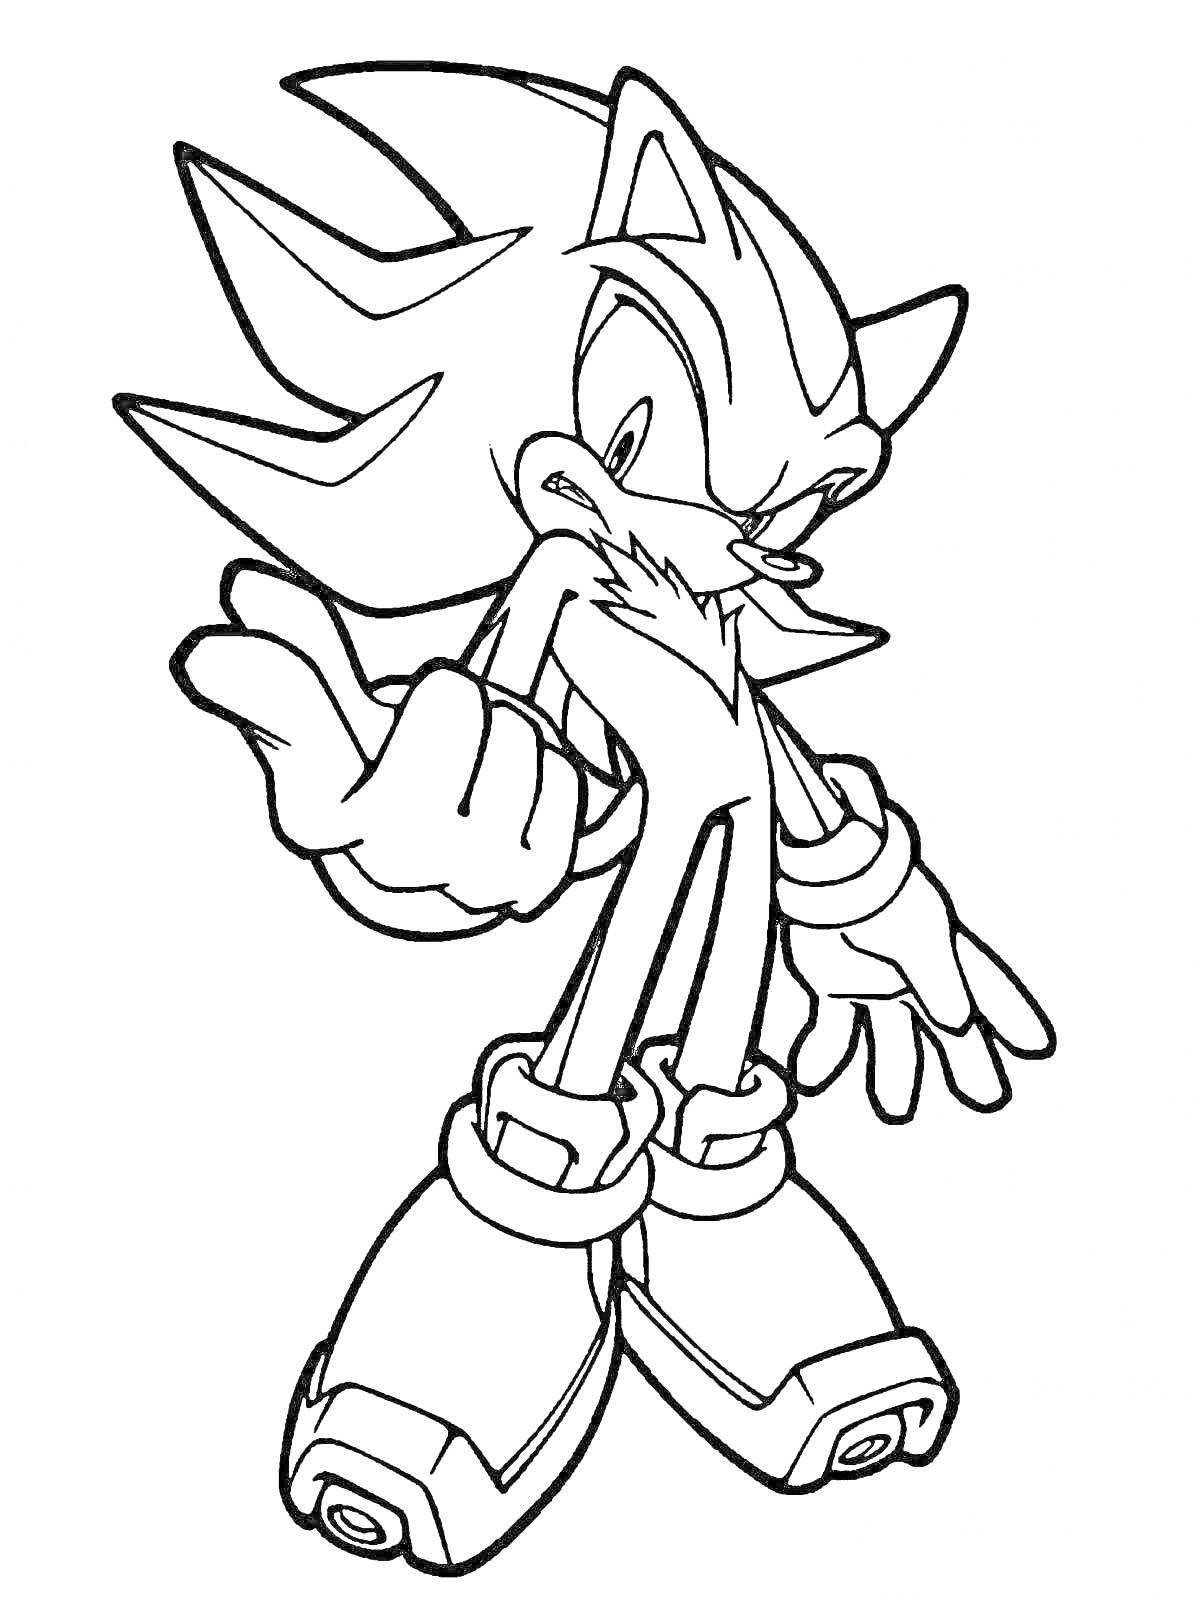 Раскраска Раскраска персонажа Shadow the Hedgehog стоящего в позе со сжатым кулаком и поднятой рукой